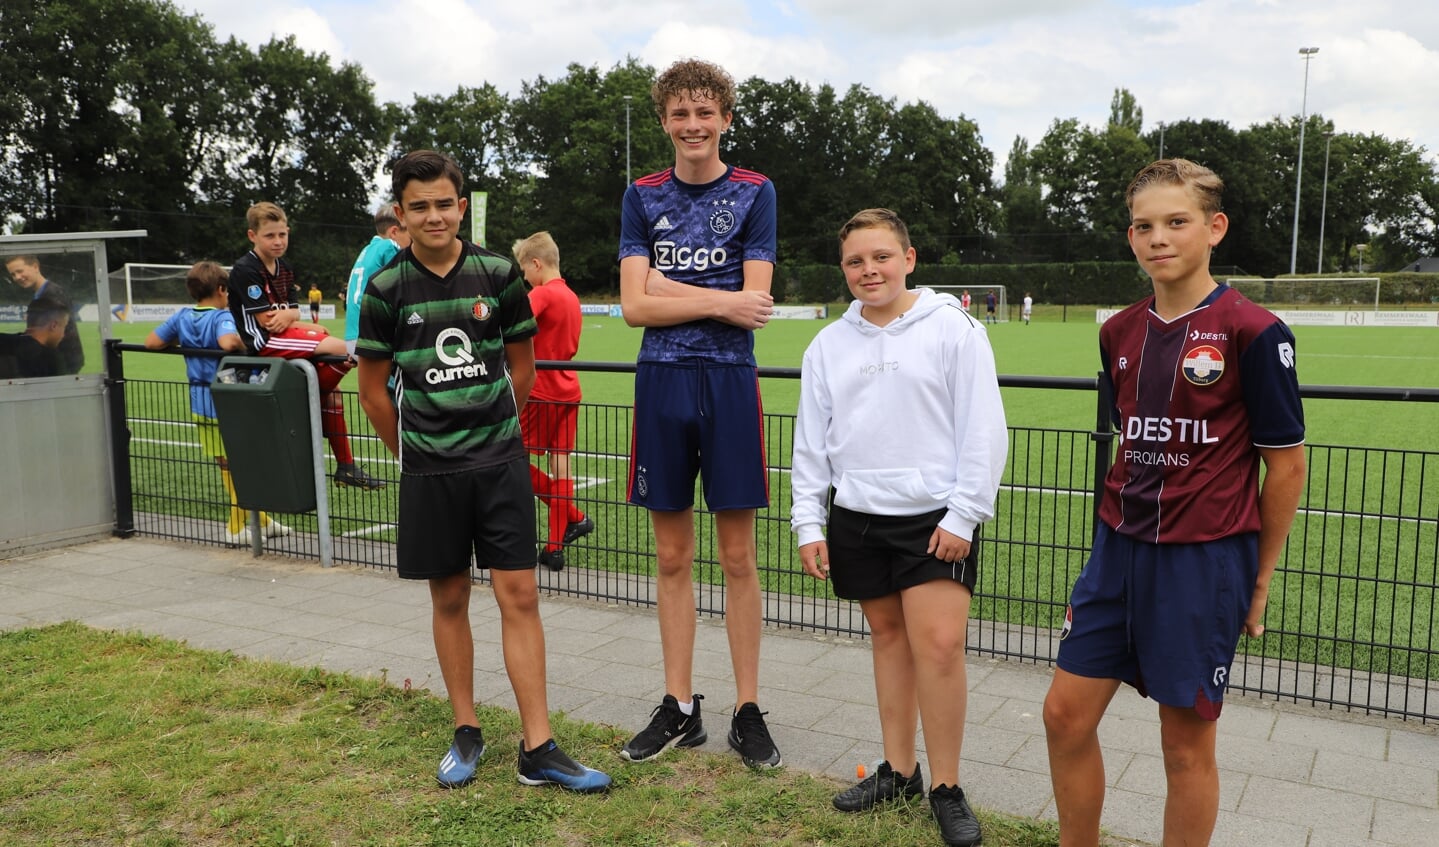 Voetbaltoernooi voor en door jongelui op Sportpark de Beek, met van links naar rechts de organisatoren: Jay van Doorenmaal, Lucas van Zon, Mayro Ajouri en Siegert Baartmans.